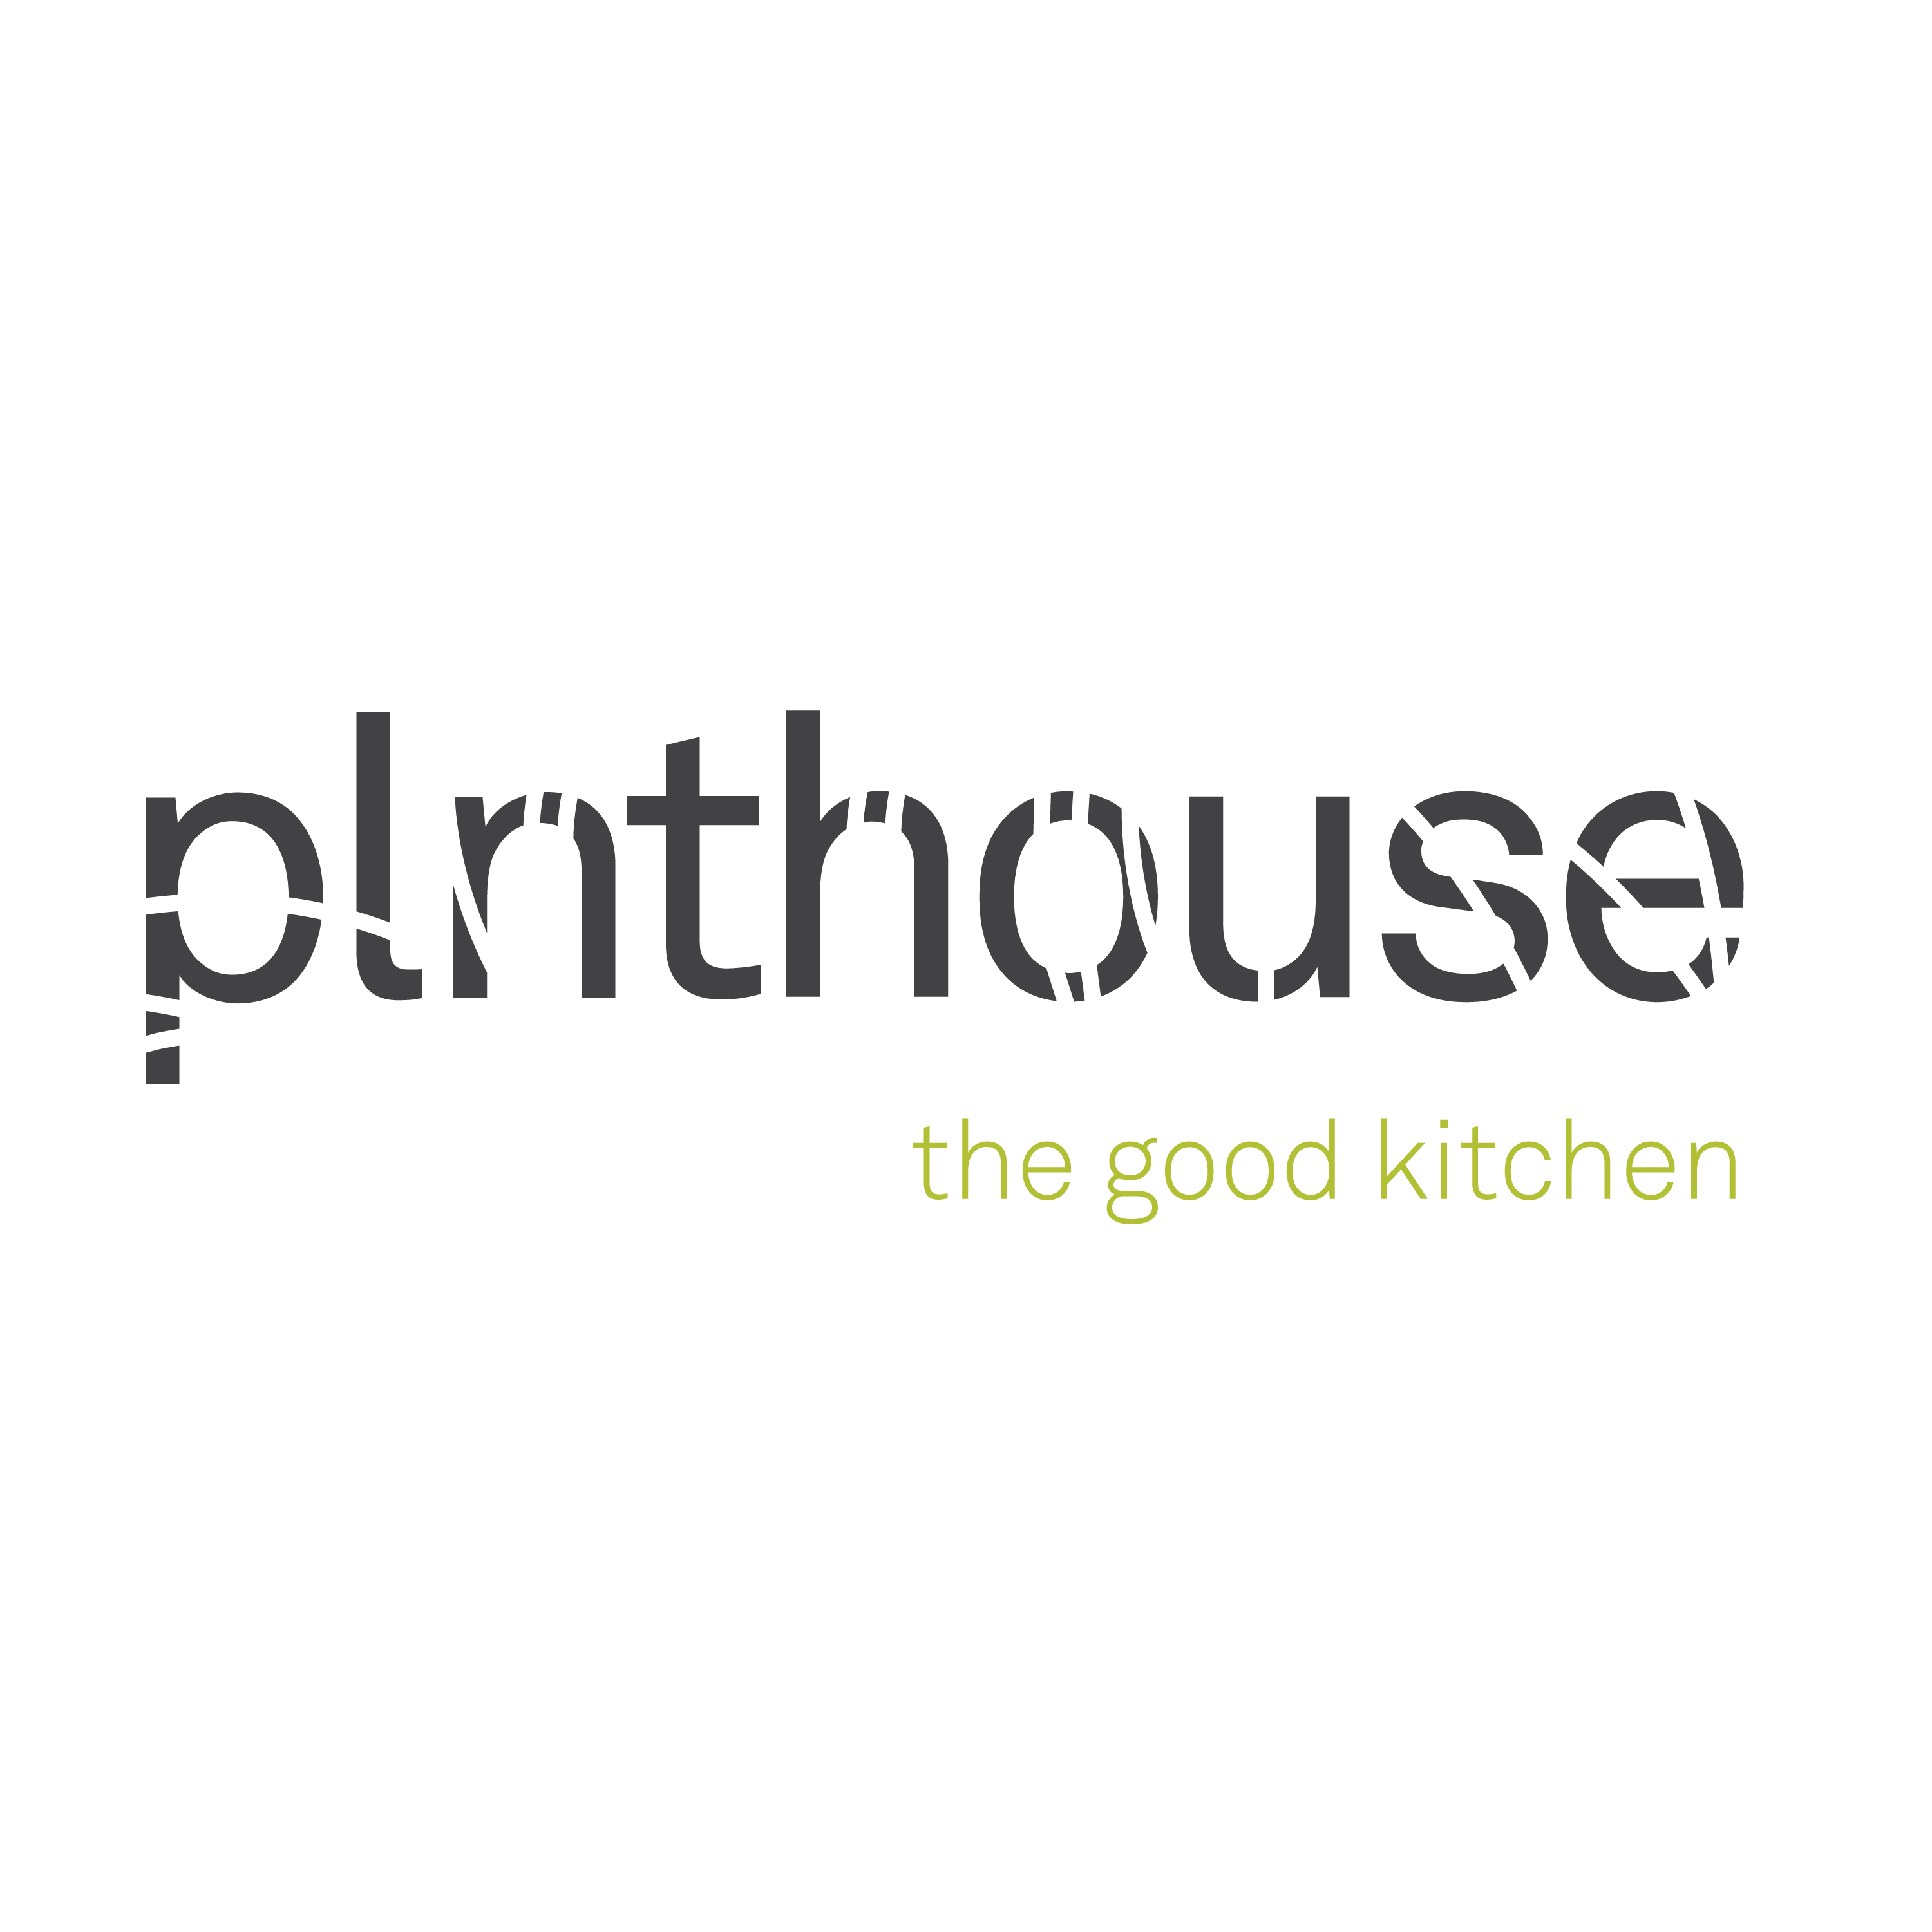 Plnthouse